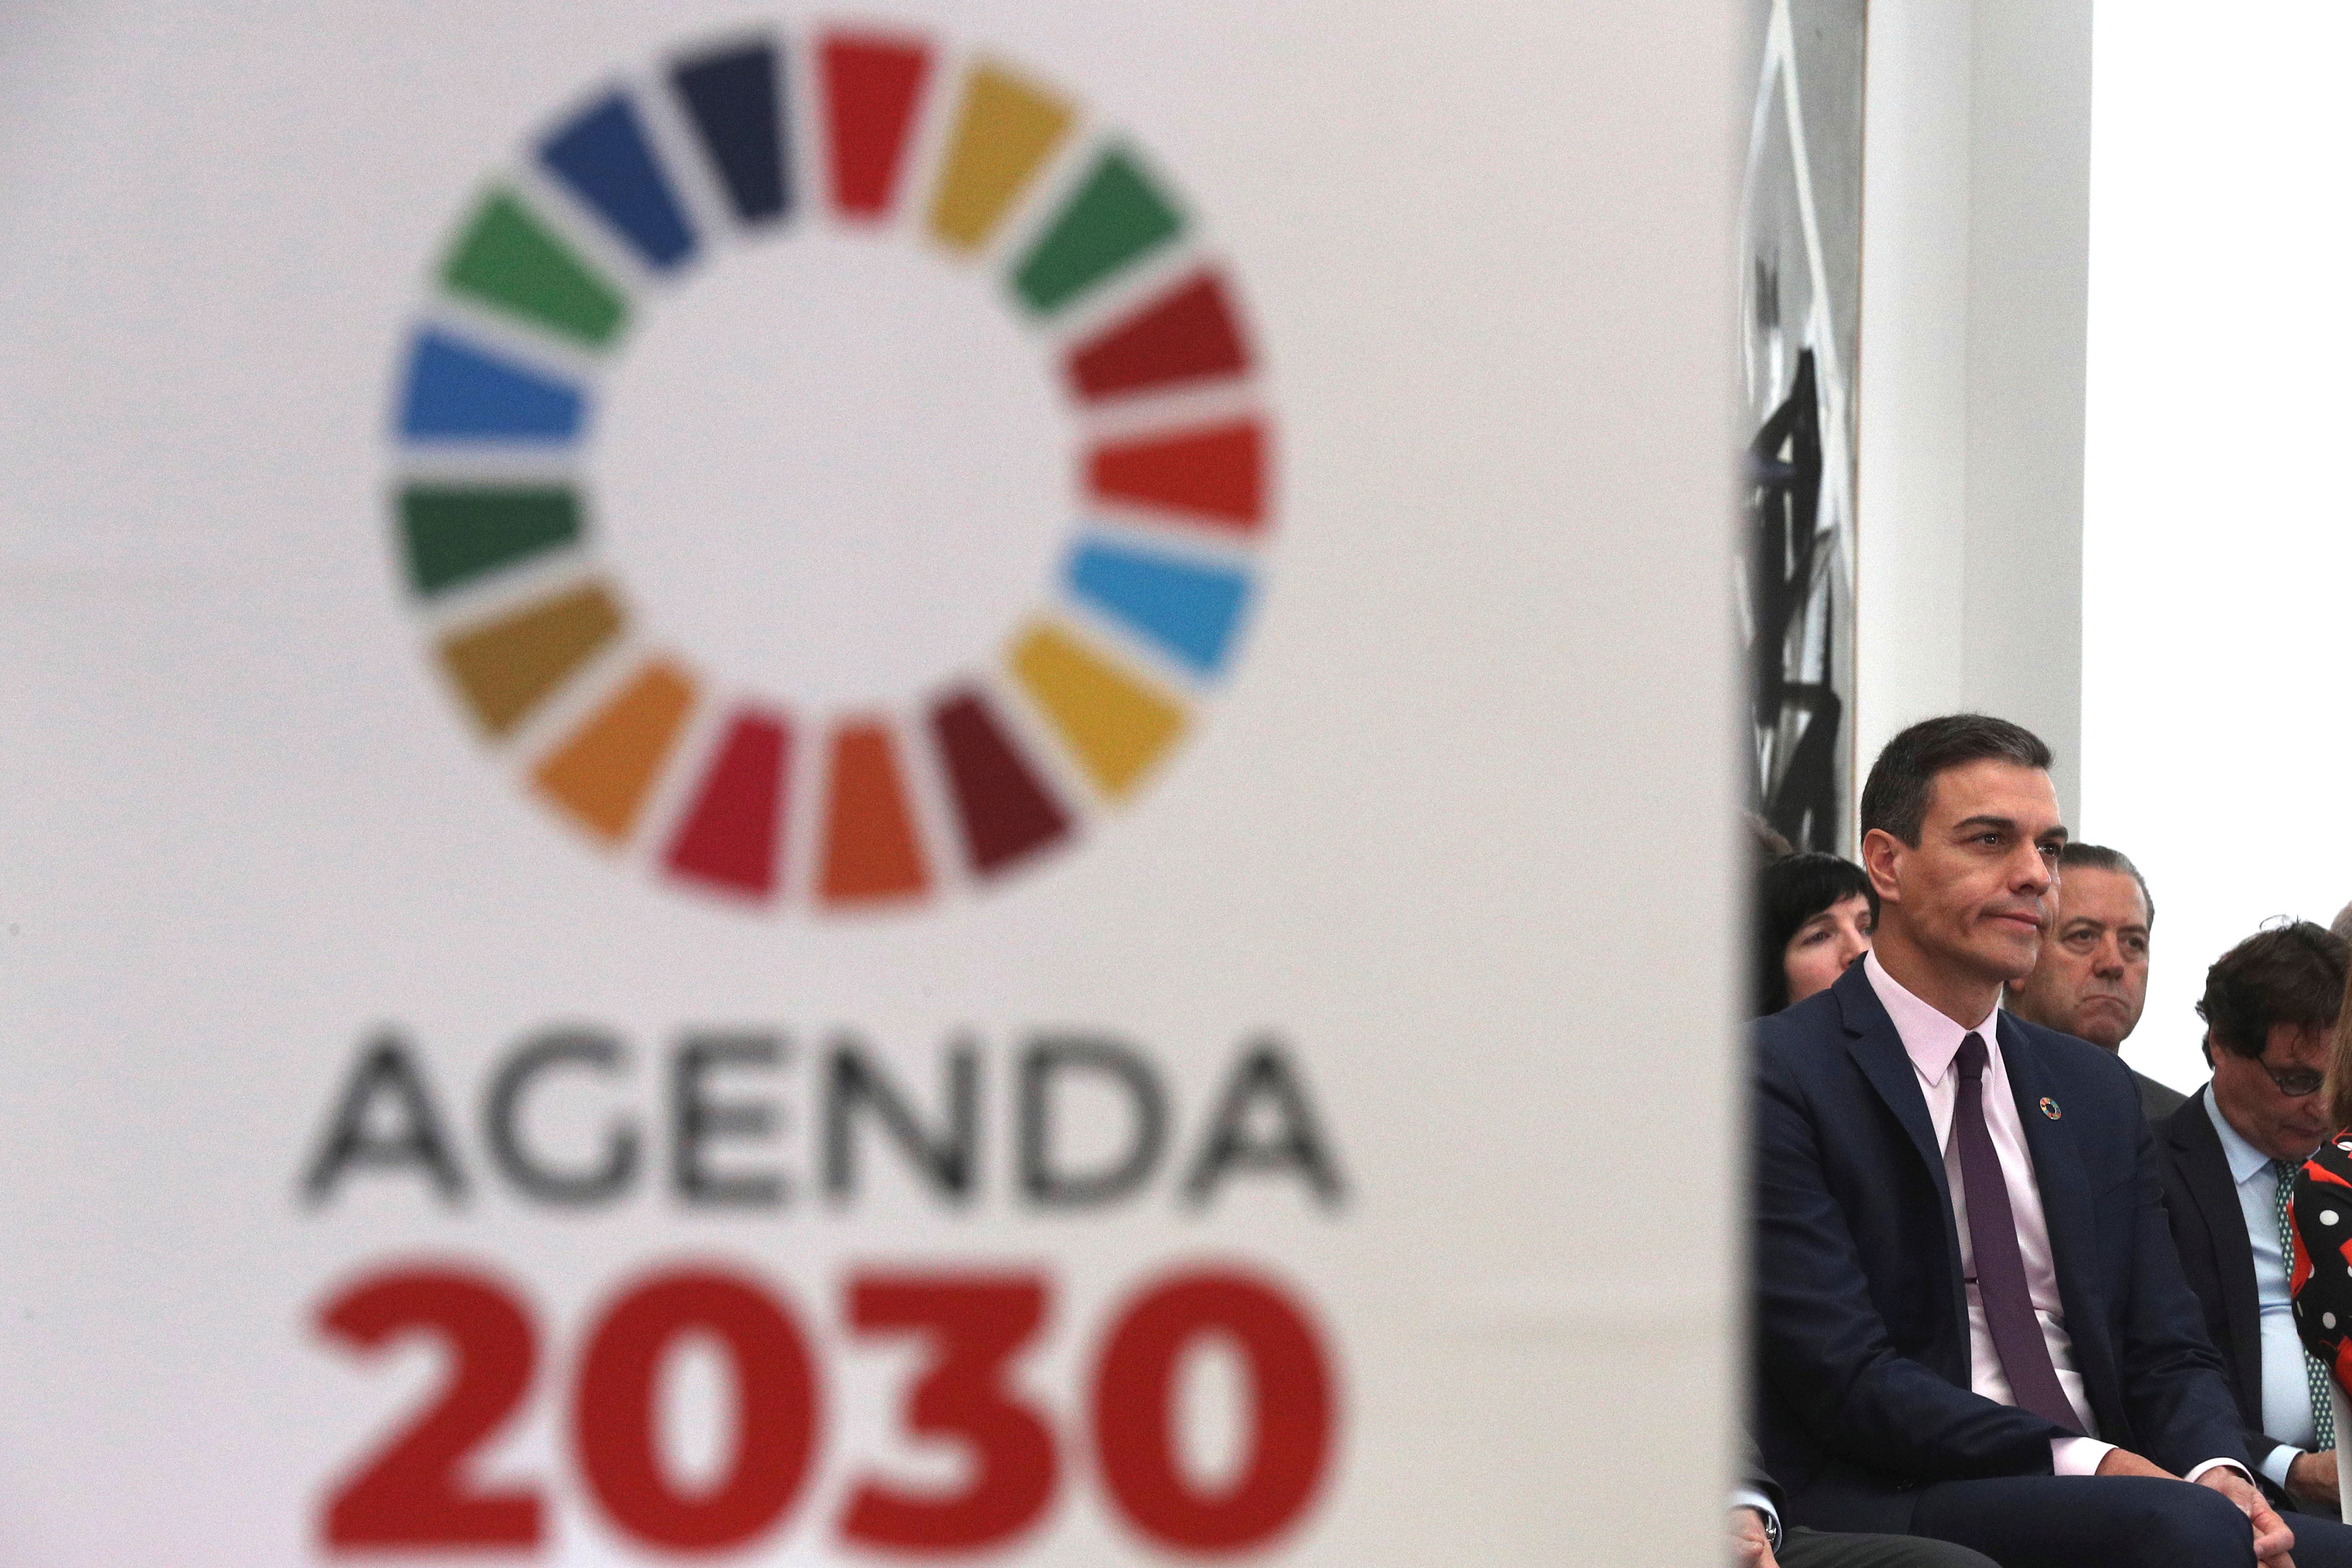 El PSOE se salta la normativa de la ONU de no utilizar el logo de la agenda 2030